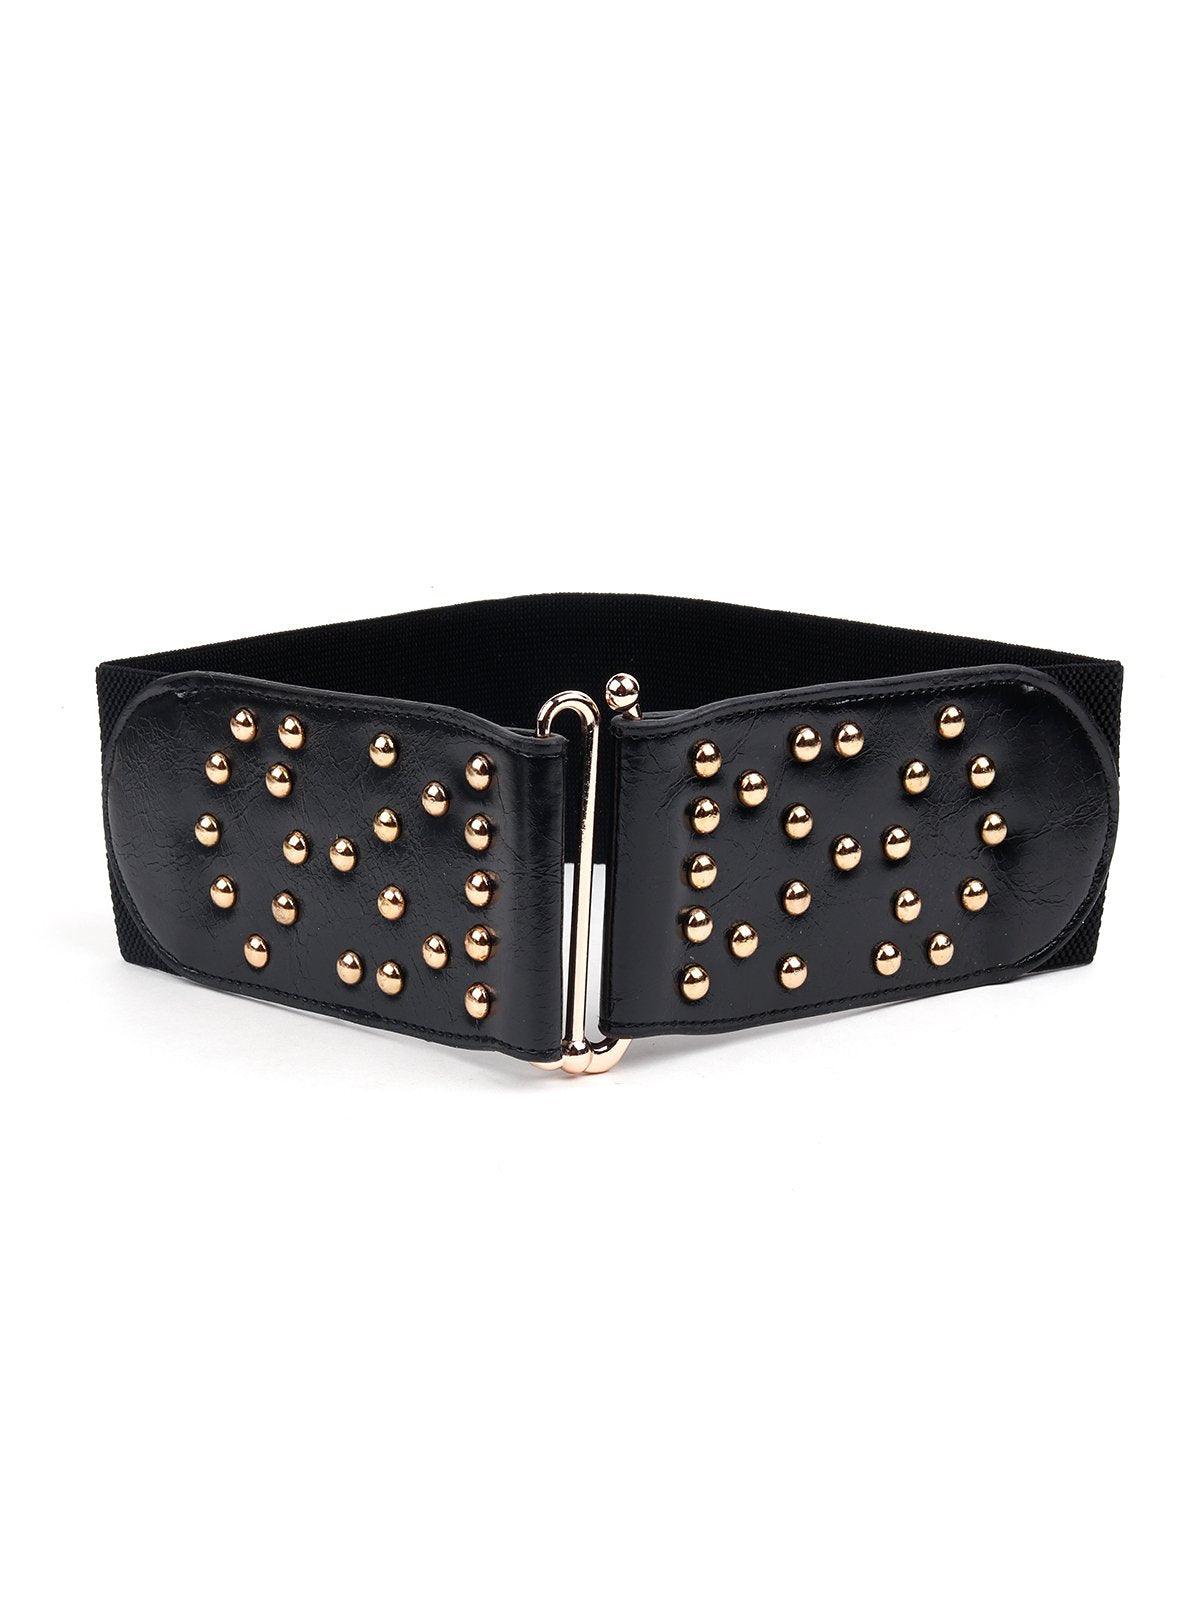 Gold studded black broad waist belt - Odette